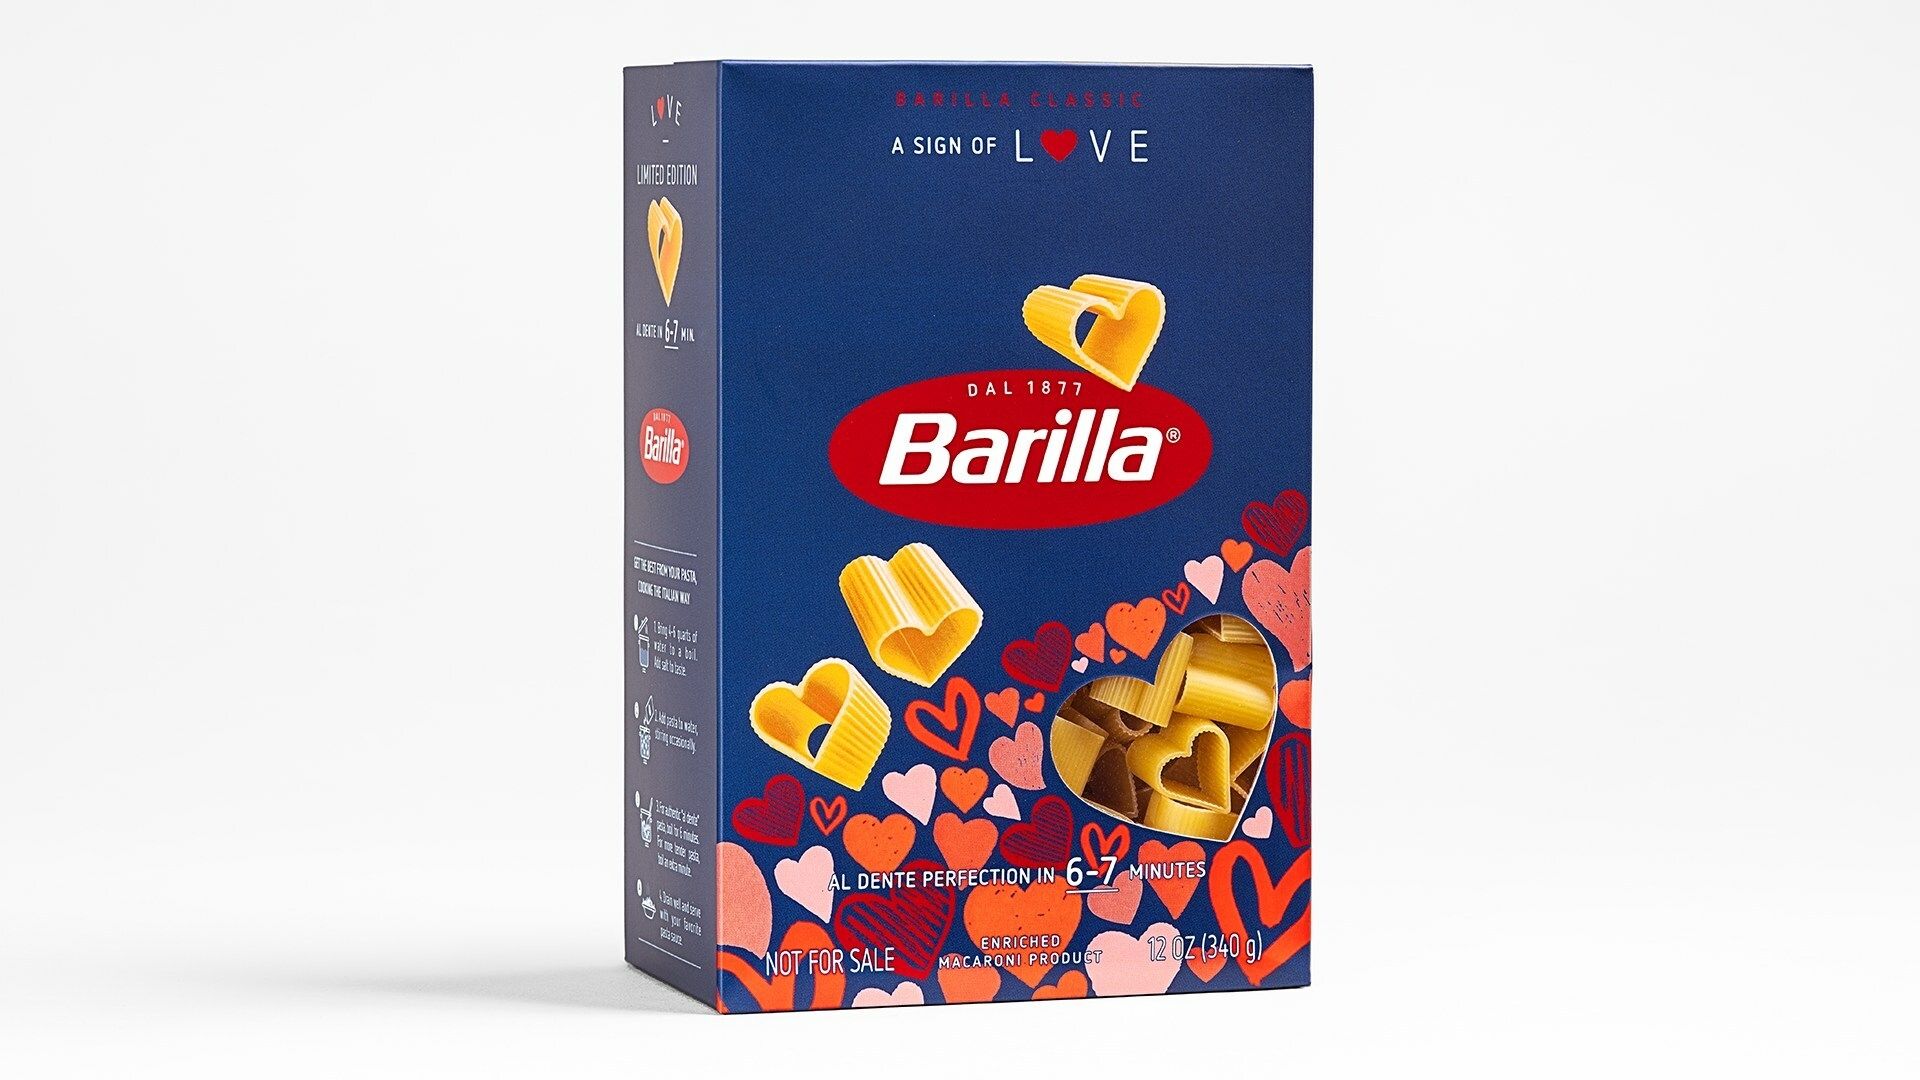 Barilla sort des pâtes en forme de cœur pour la Saint-Valentin